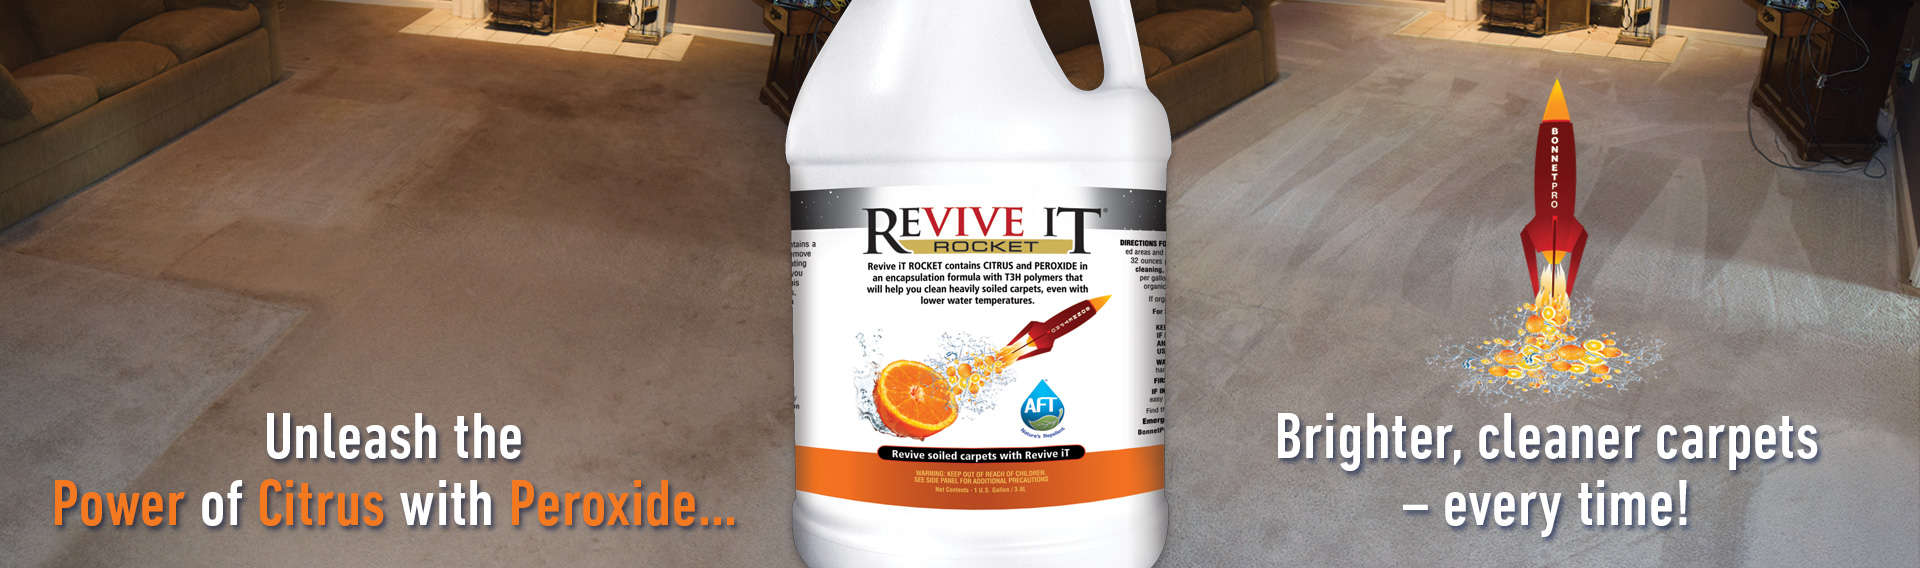 Revive iT Rocket best peroxide carpet detergent